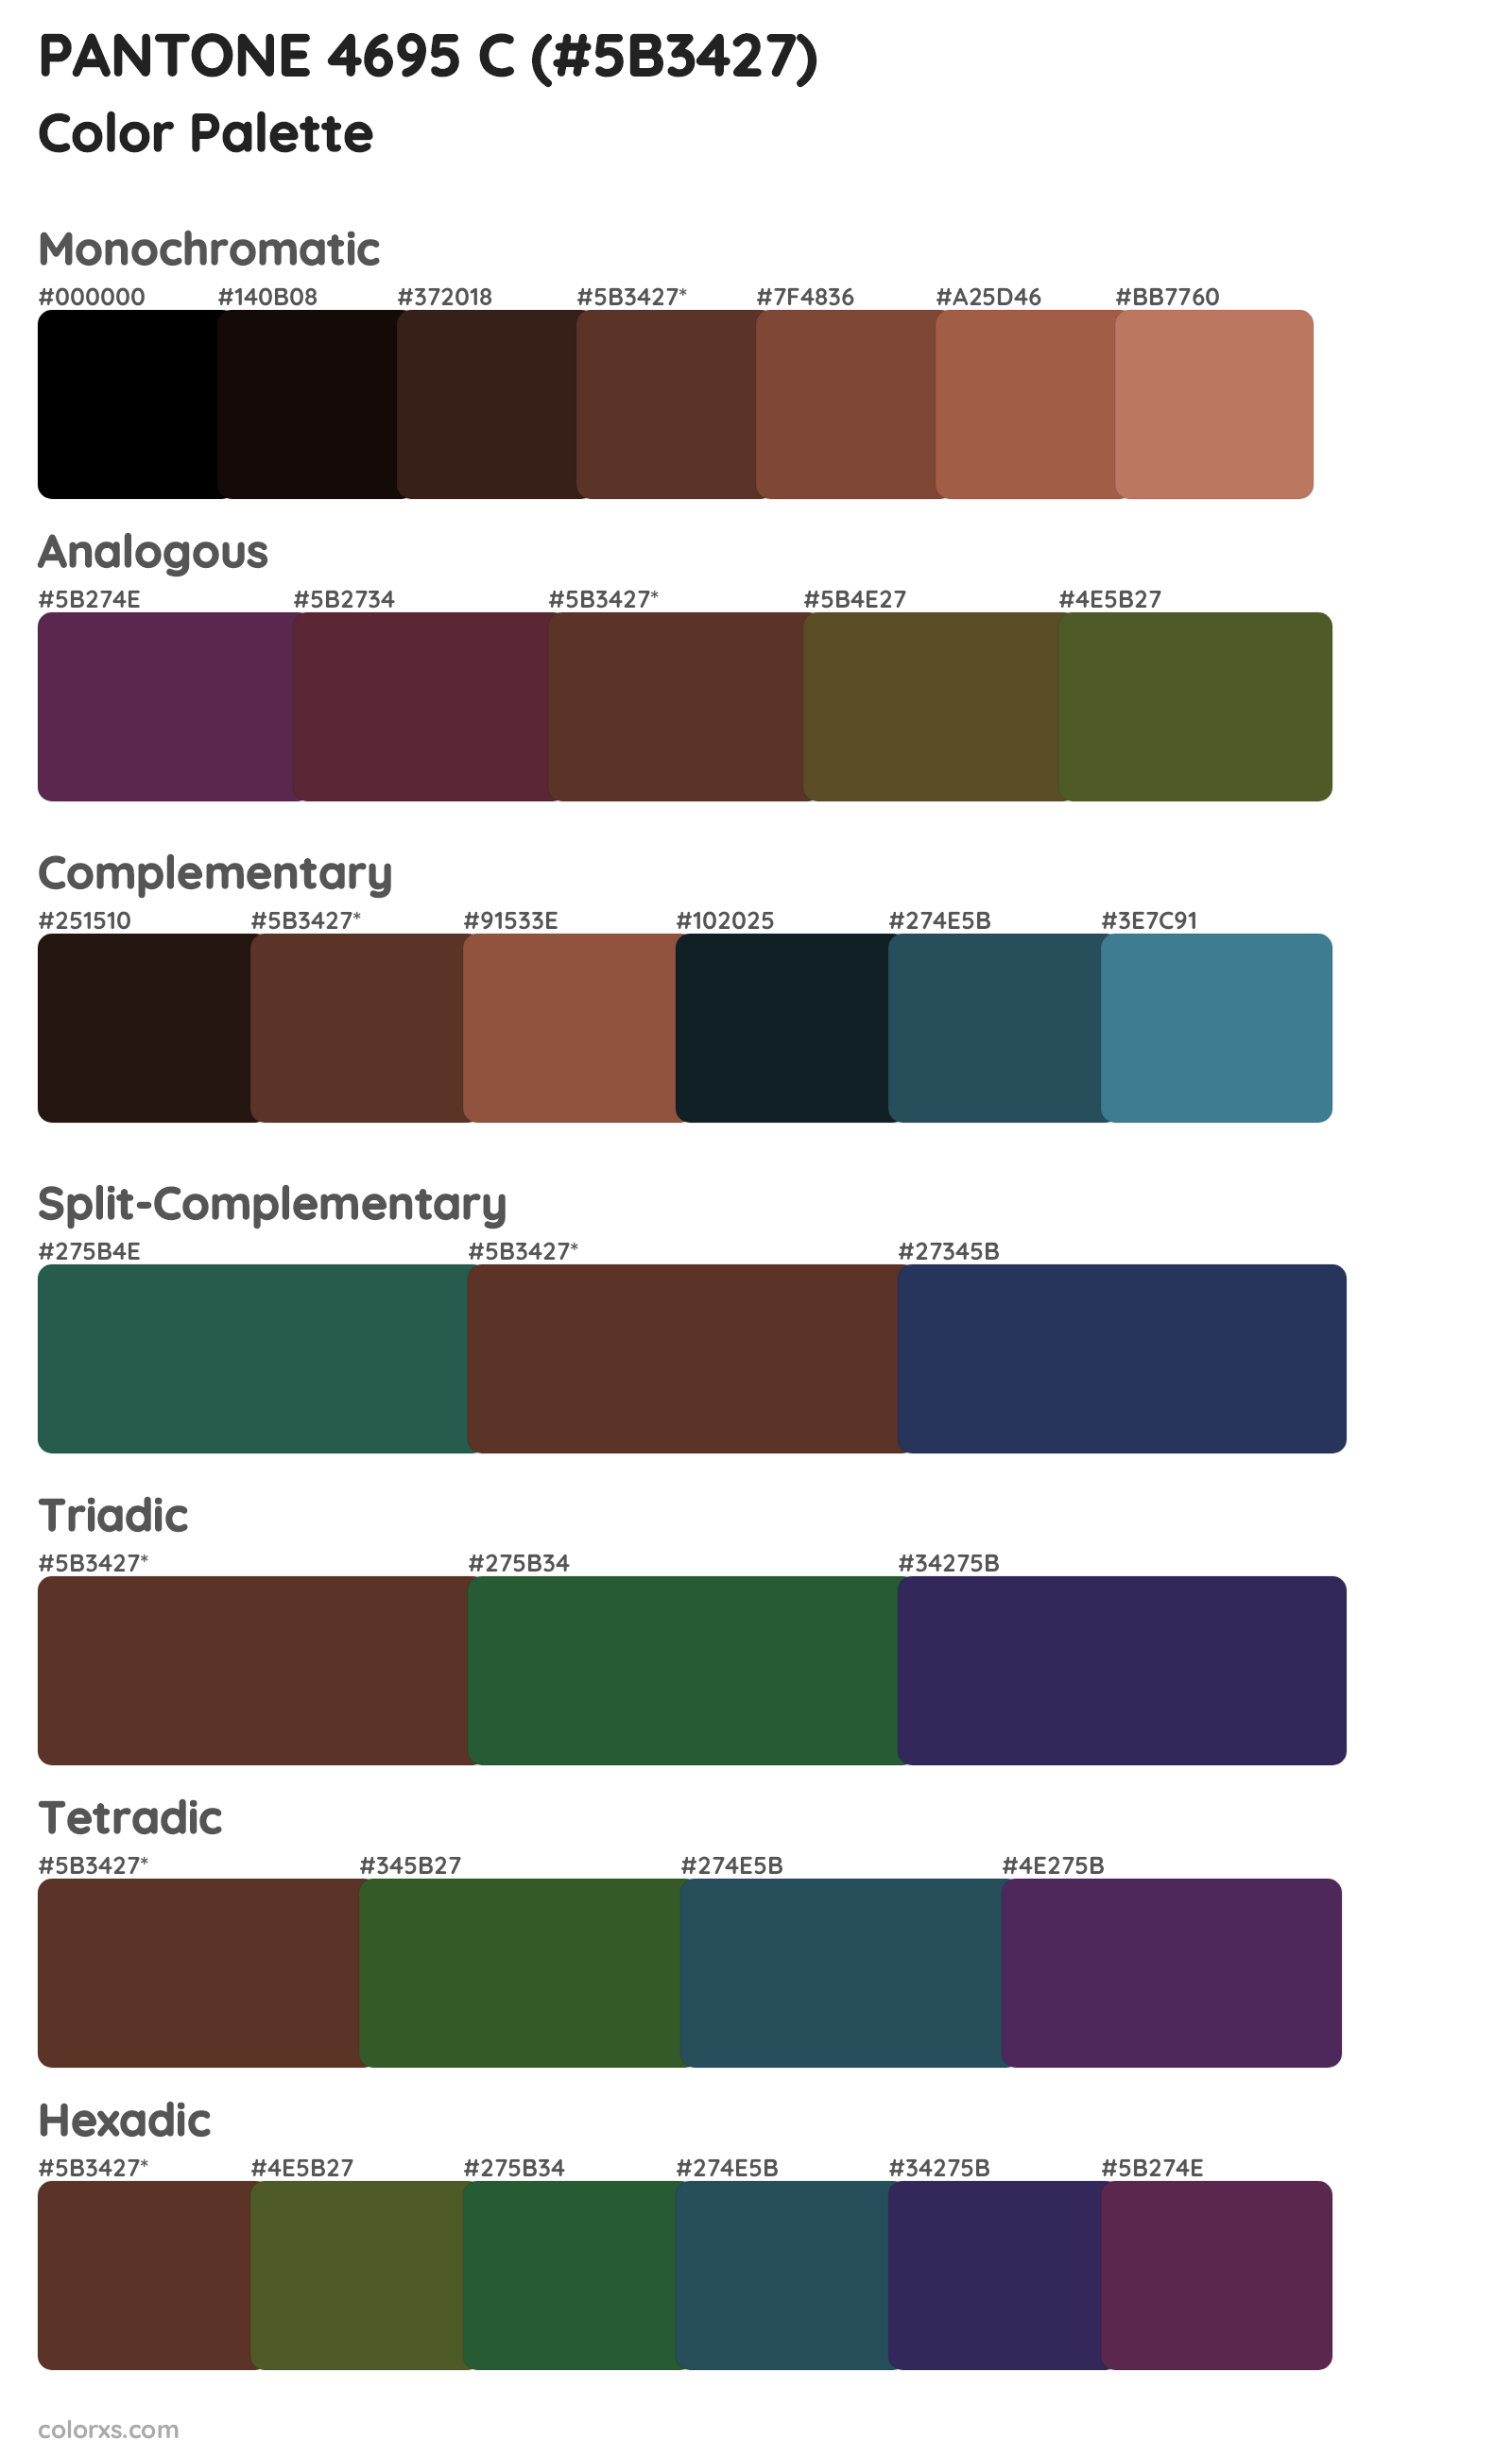 PANTONE 4695 C Color Scheme Palettes